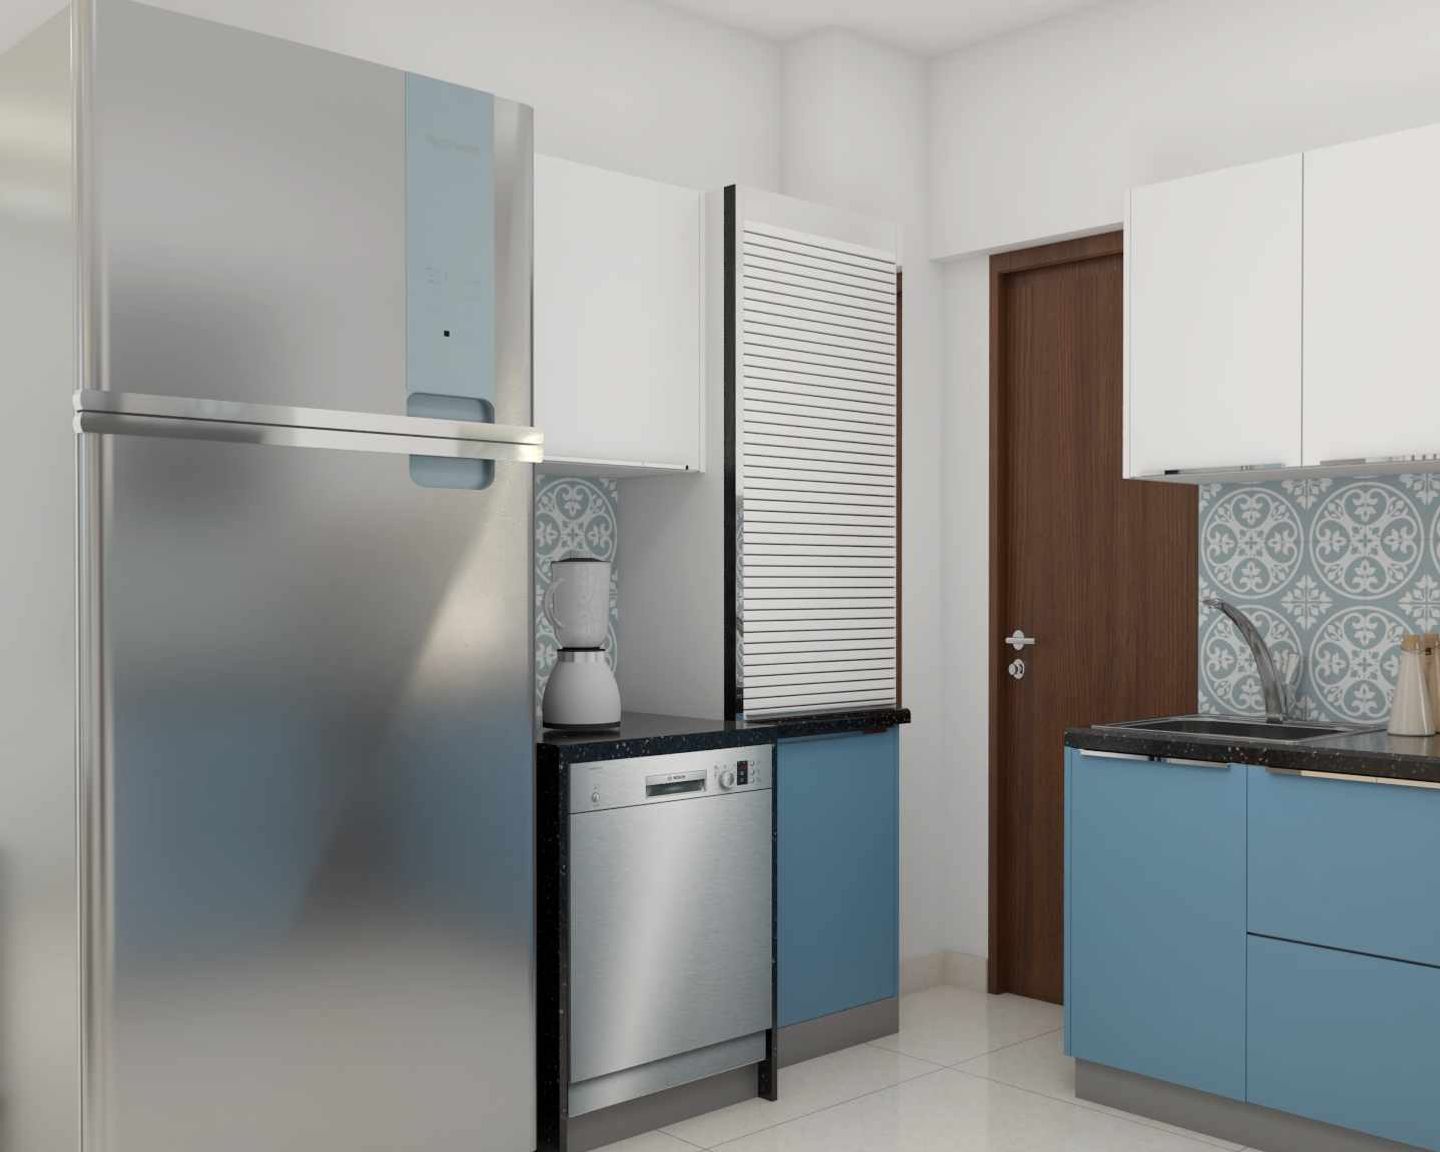 U-Shaped Modern Kitchen Design With Patterned Dado Tiles